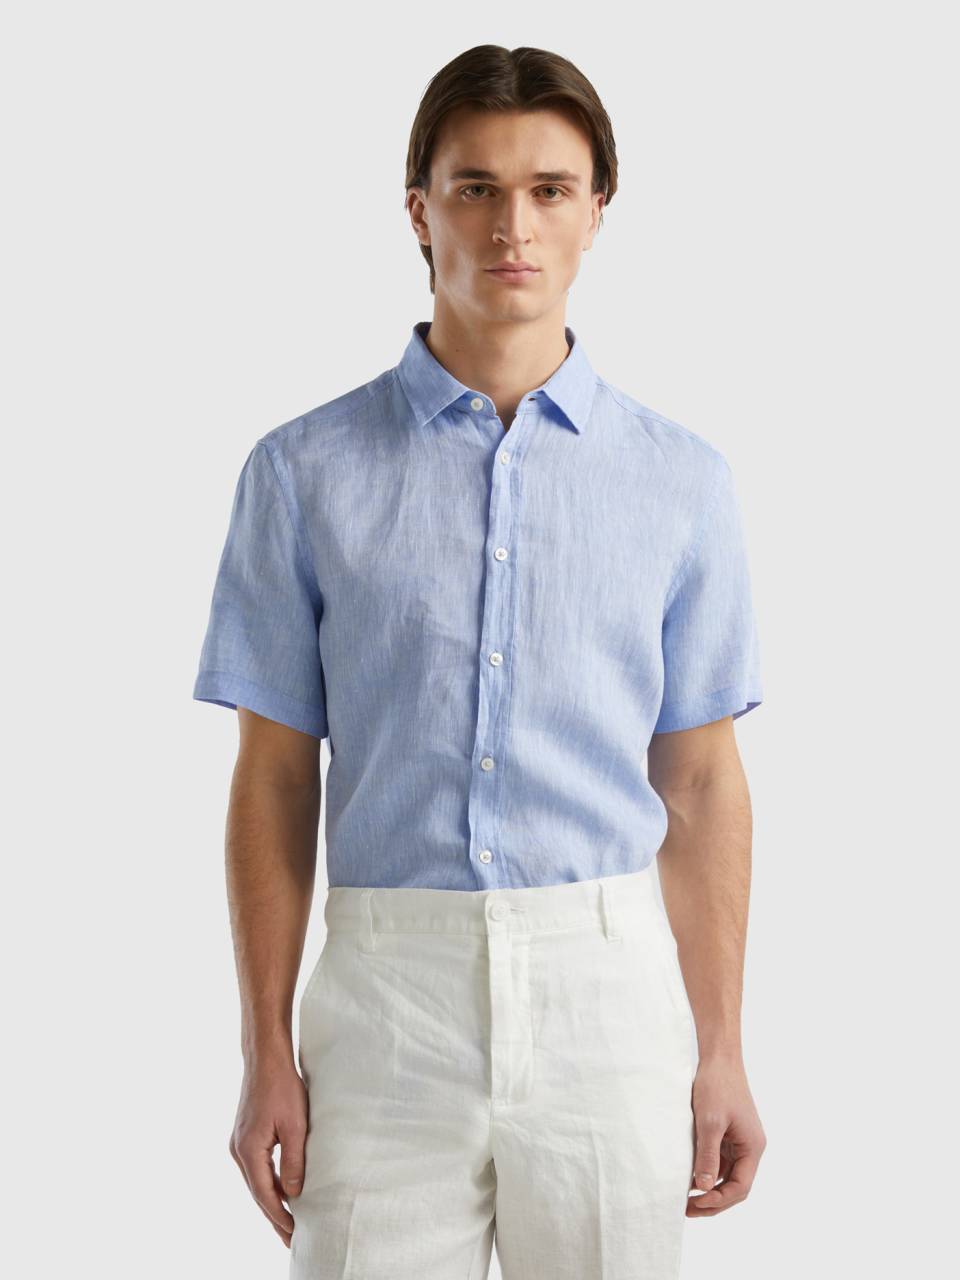 Lucky Brand 100% Linen Men's Size S Short Sleeve Button Up Shirt Blue  Striped 